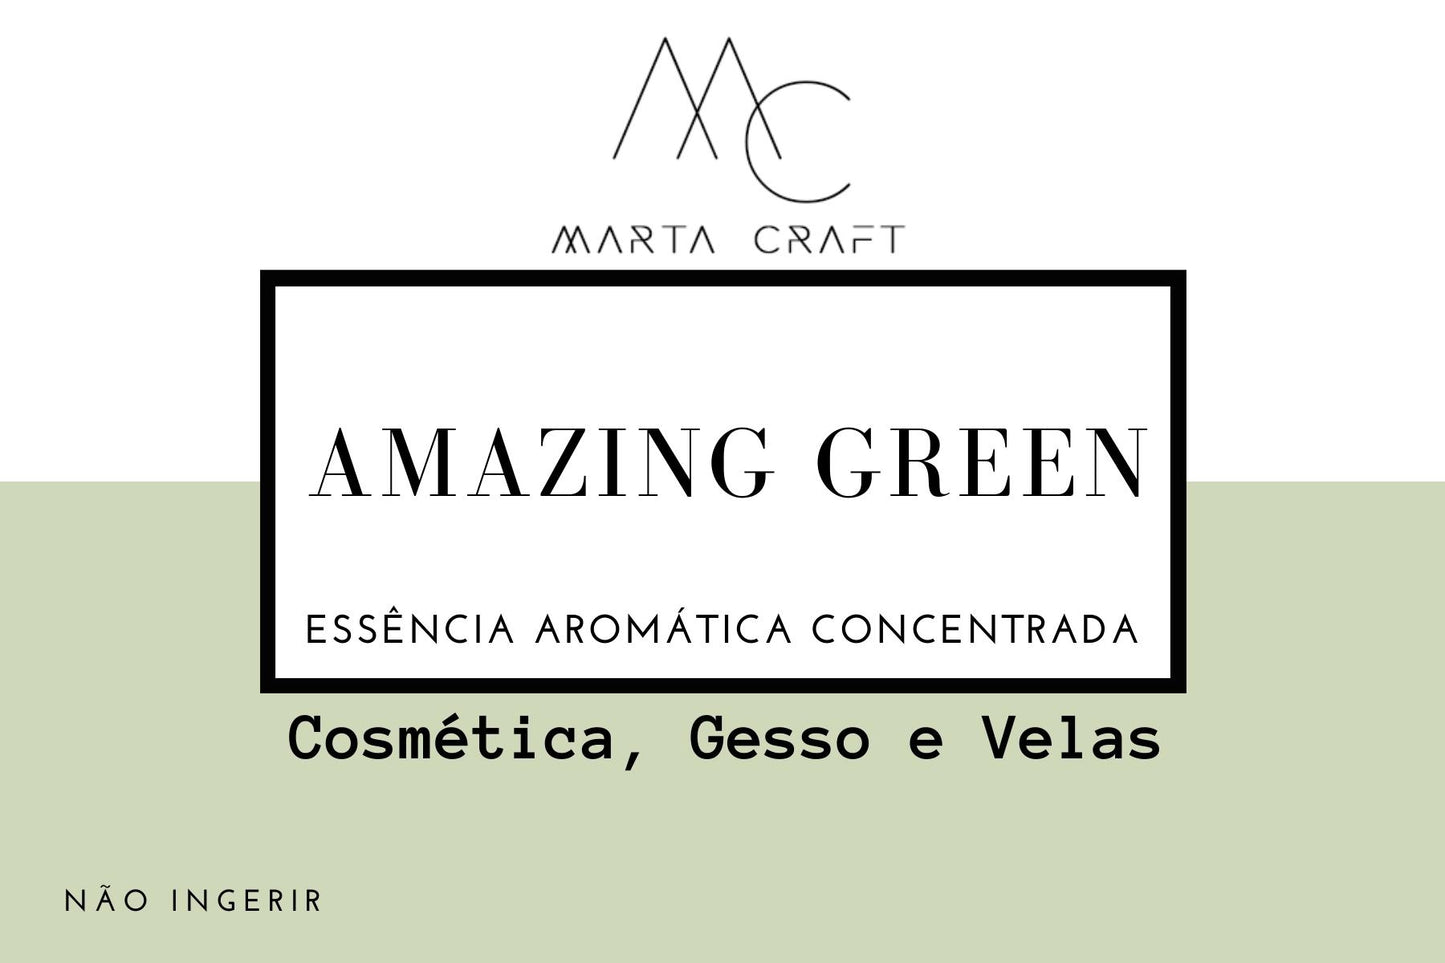 Essência aromática concentrada para Velas e Sabonetes e Gesso  -Amanzing Green